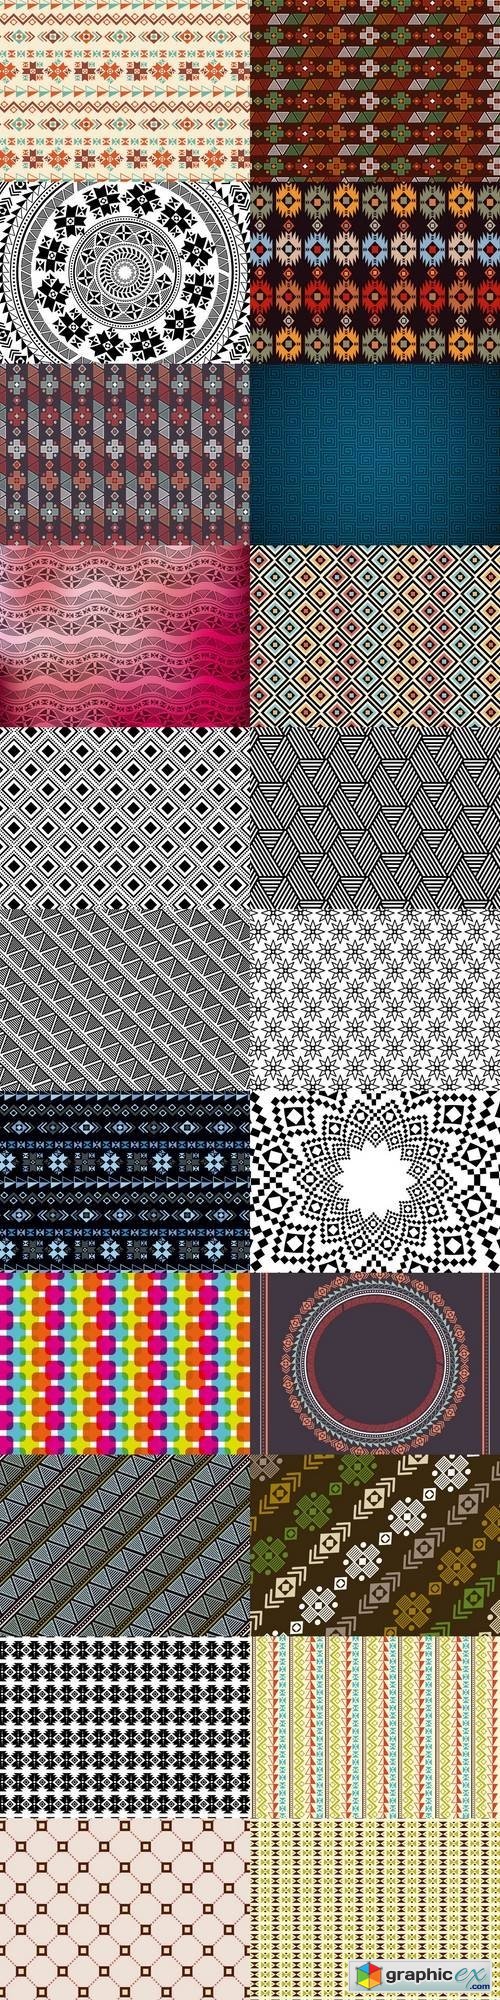 Pattern background design 5